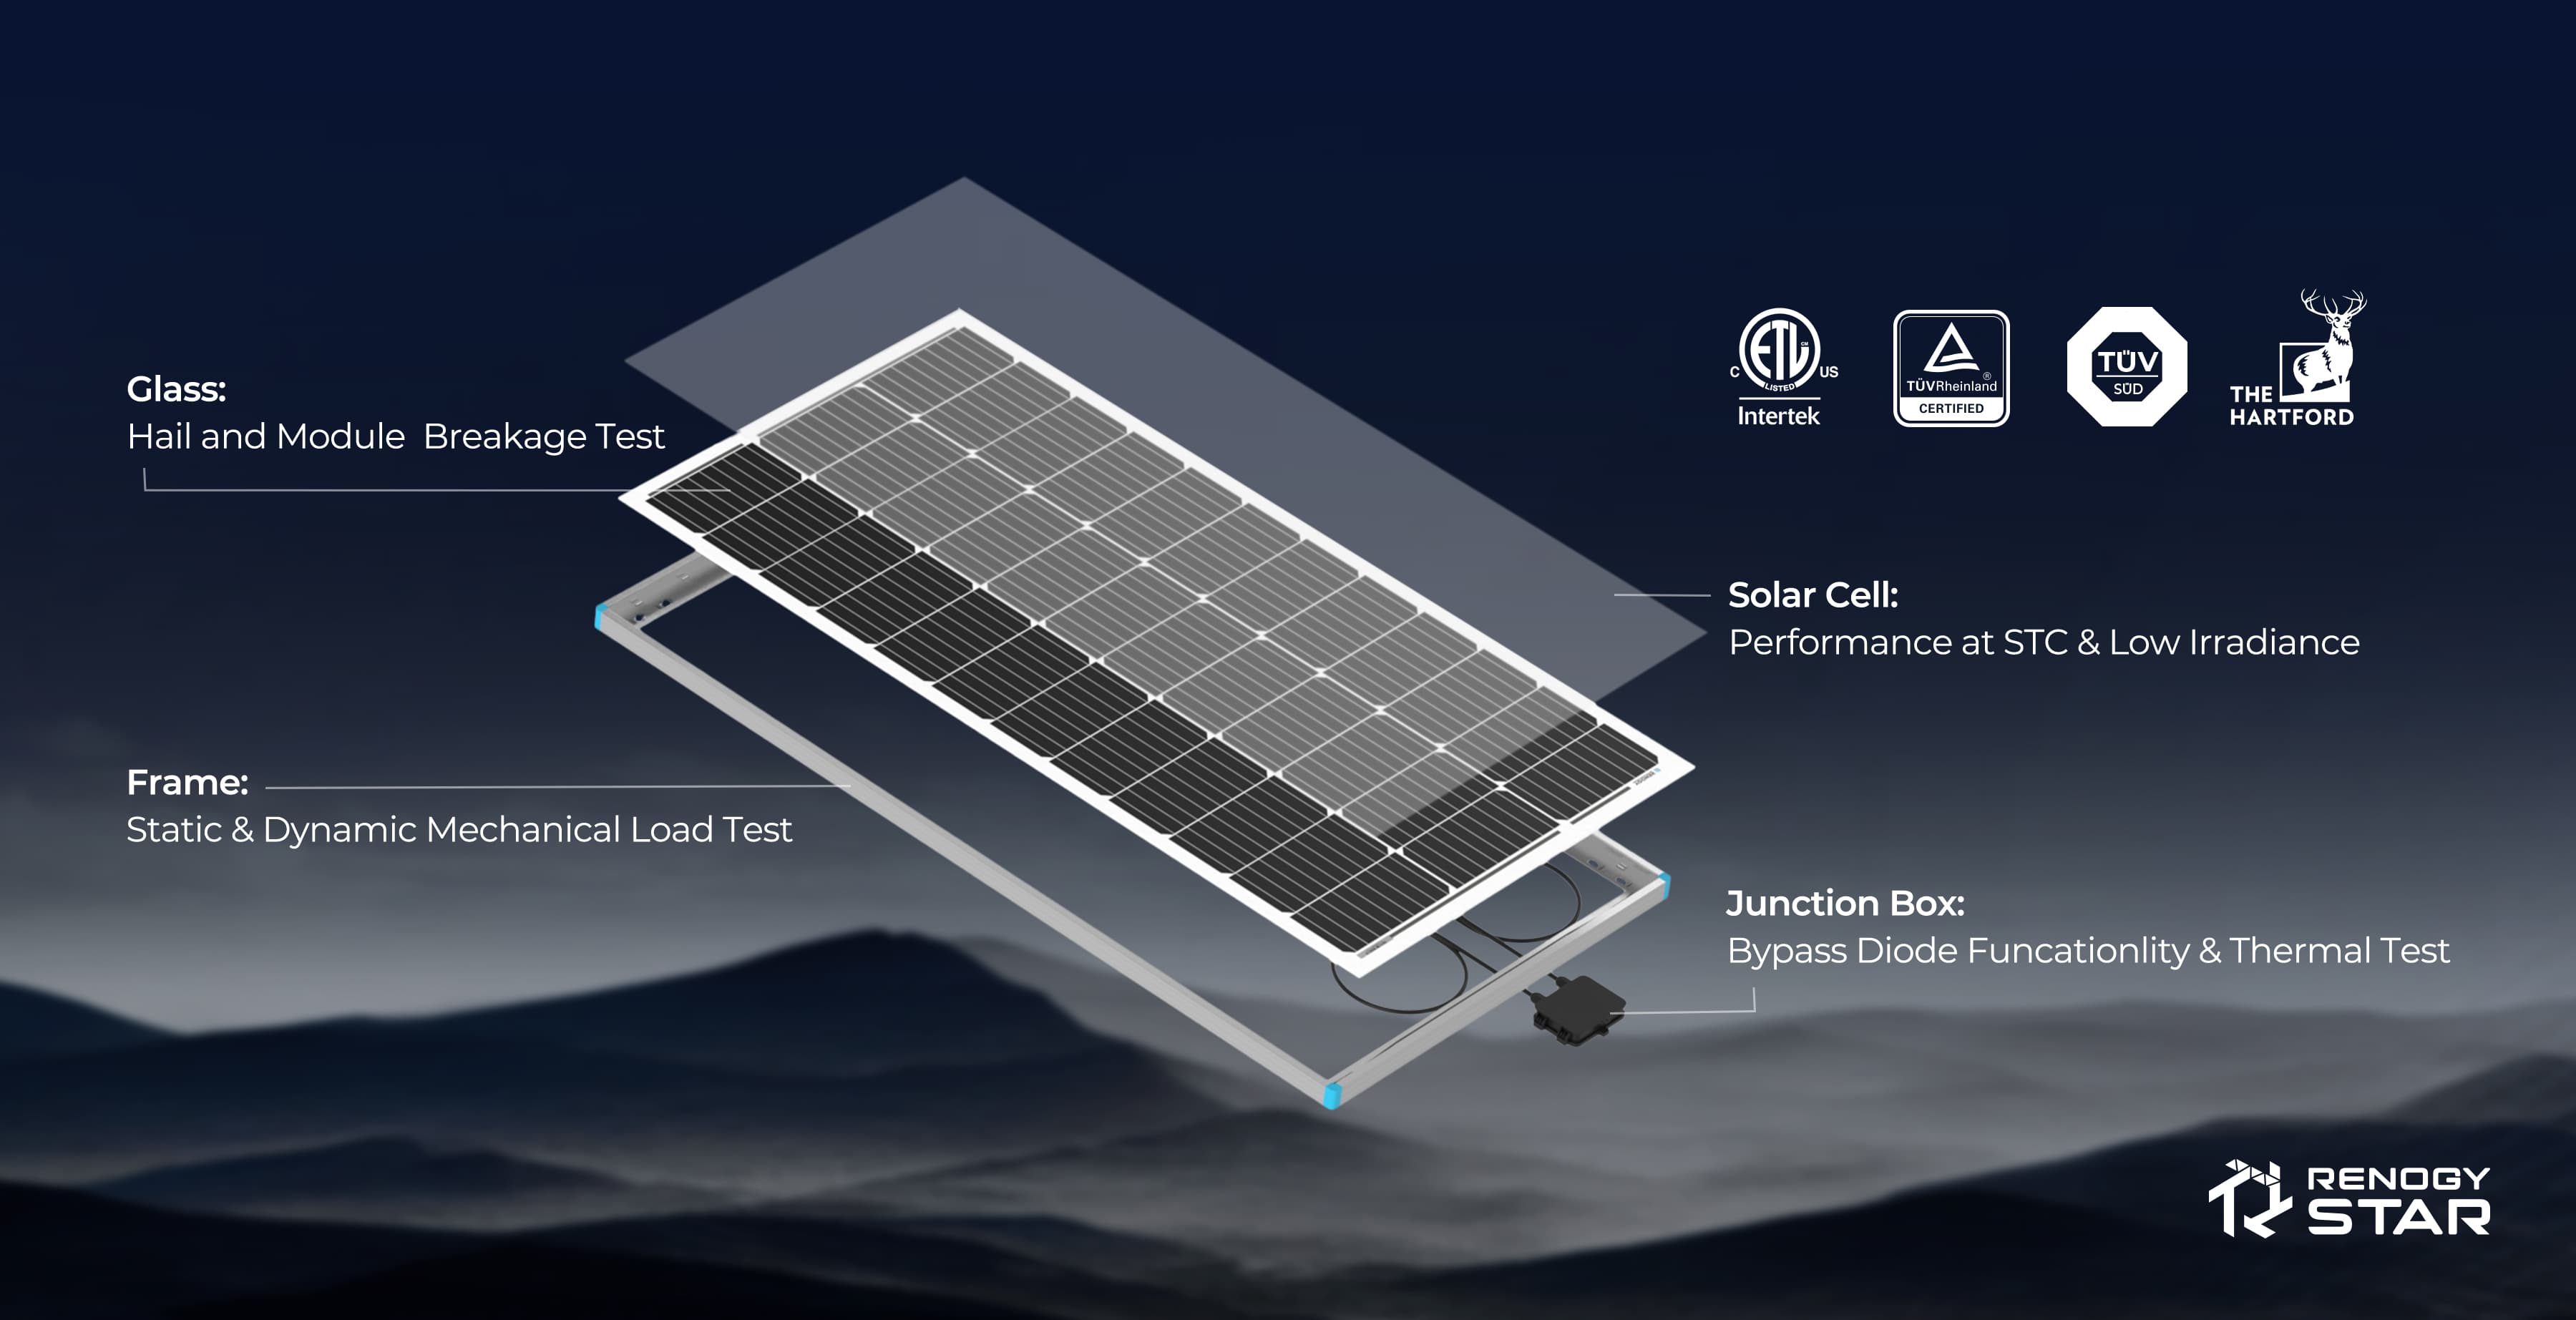 100 Watt 12 Volt Monocrystalline Solar Panel